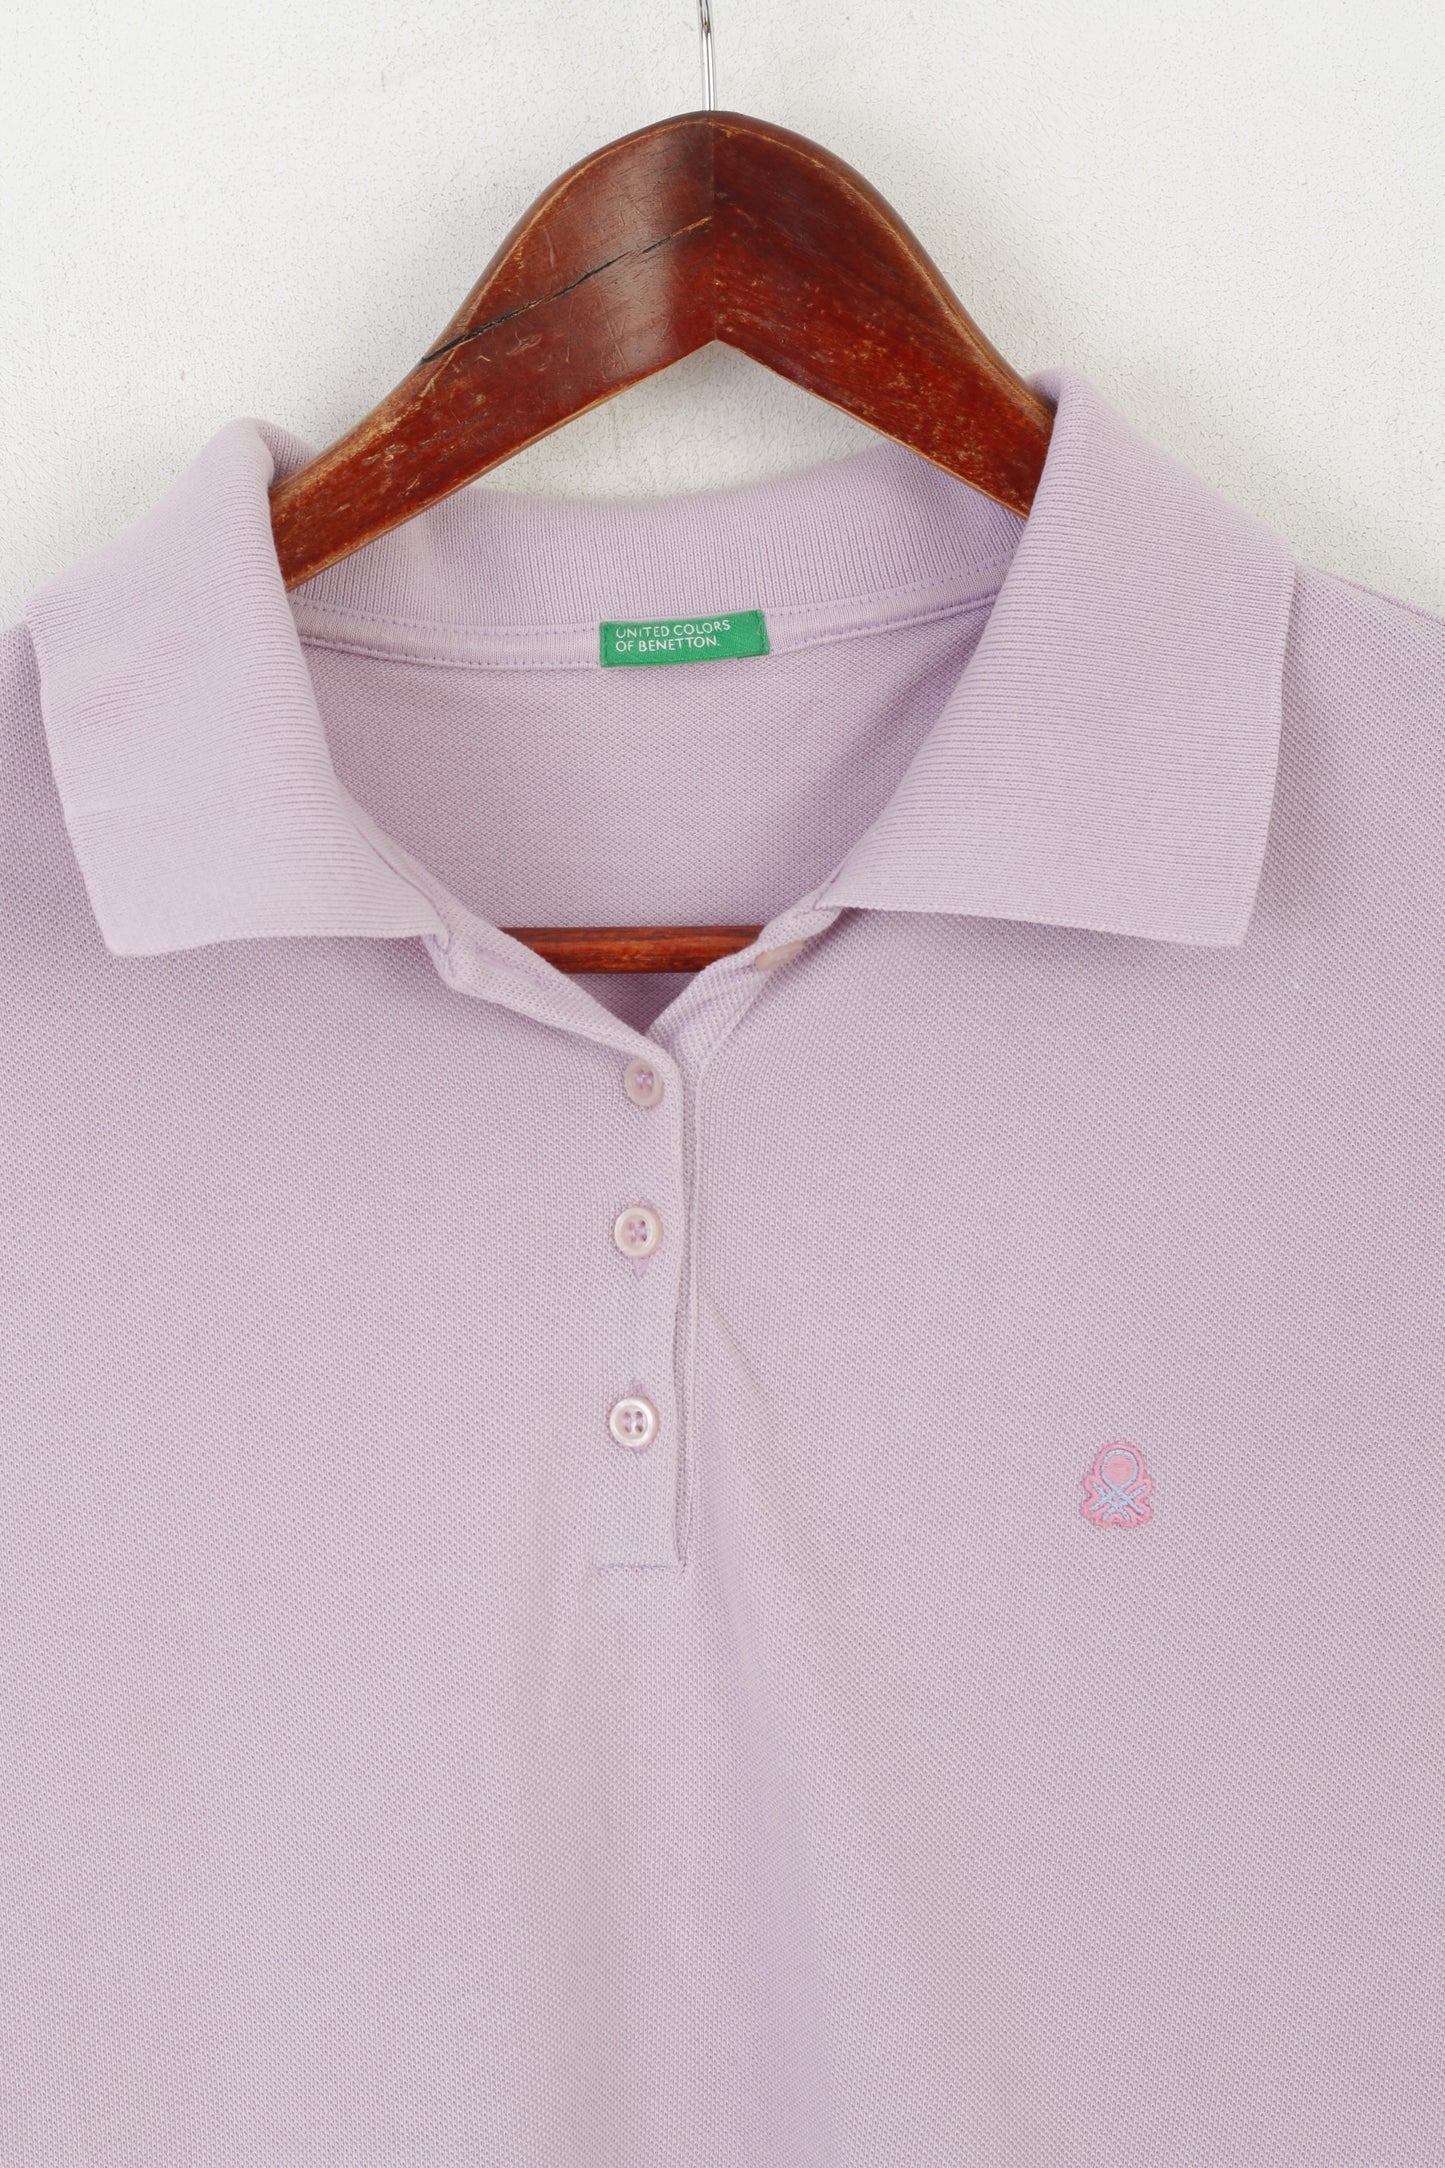 United Colors Of Benetton Women L (M) Polo Shirt Violet Cotton Vintage Sport Top